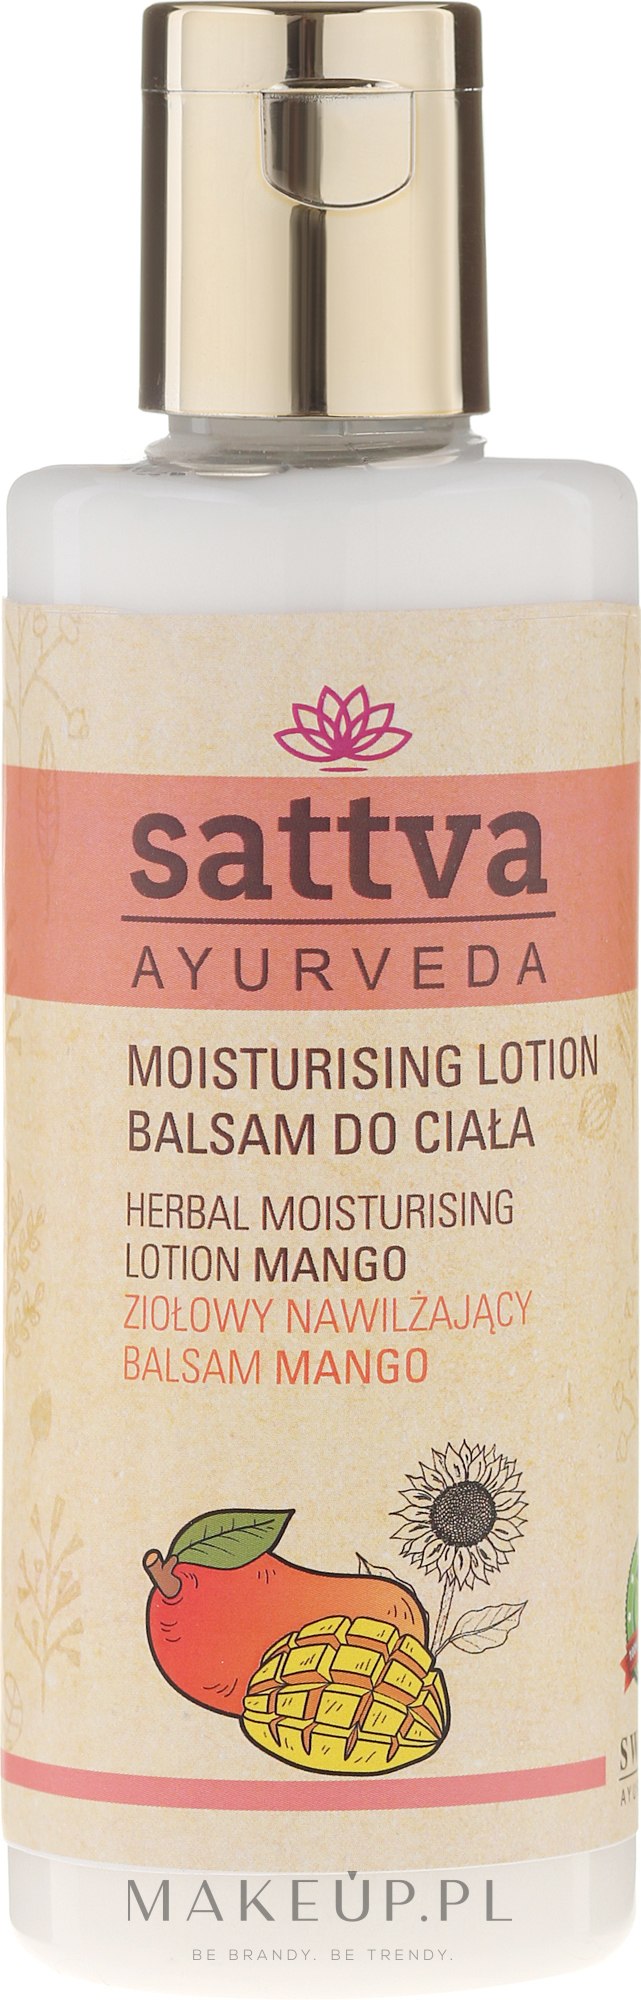 Ziołowy nawilżający balsam do ciała Mango - Sattva Ayurveda Herbal Moisturising Lotion Mango — Zdjęcie 210 ml